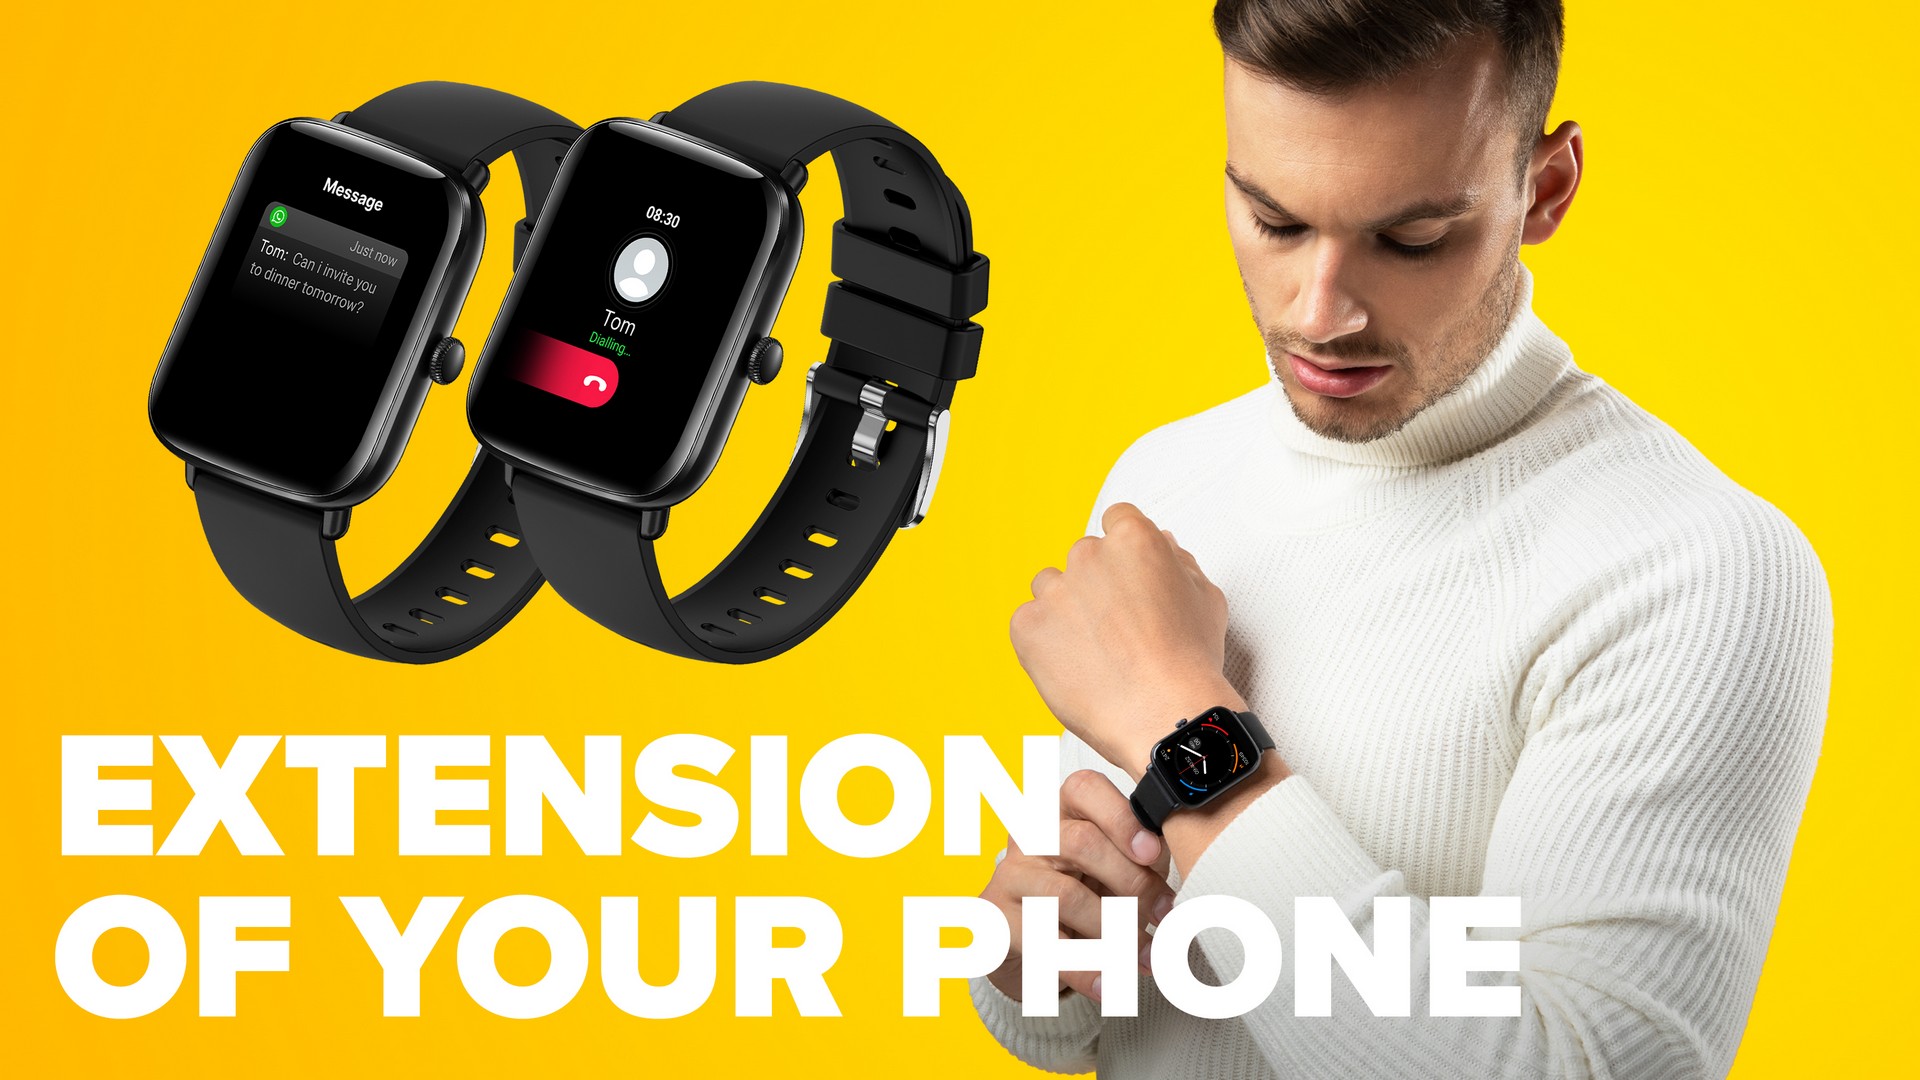 Chytré hodinky Niceboy Watch Lite 3 jsou vybaveny reproduktorem a mikrofonem pro vyřizování telefonních hovorů přímo z vašeho zápěstí.